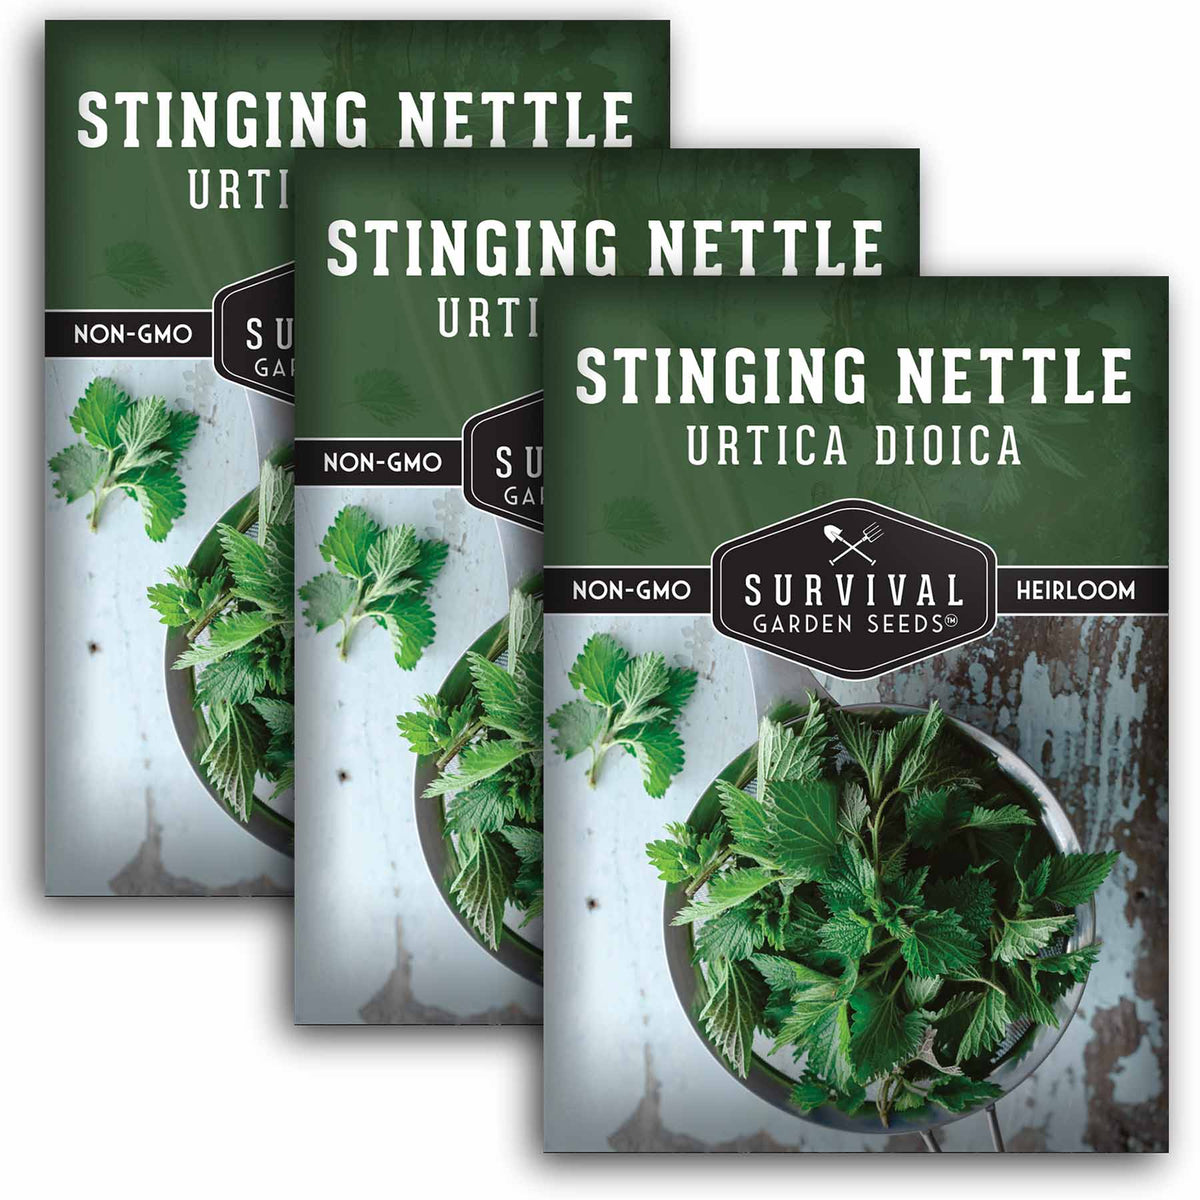 Stinging Nettle Seeds